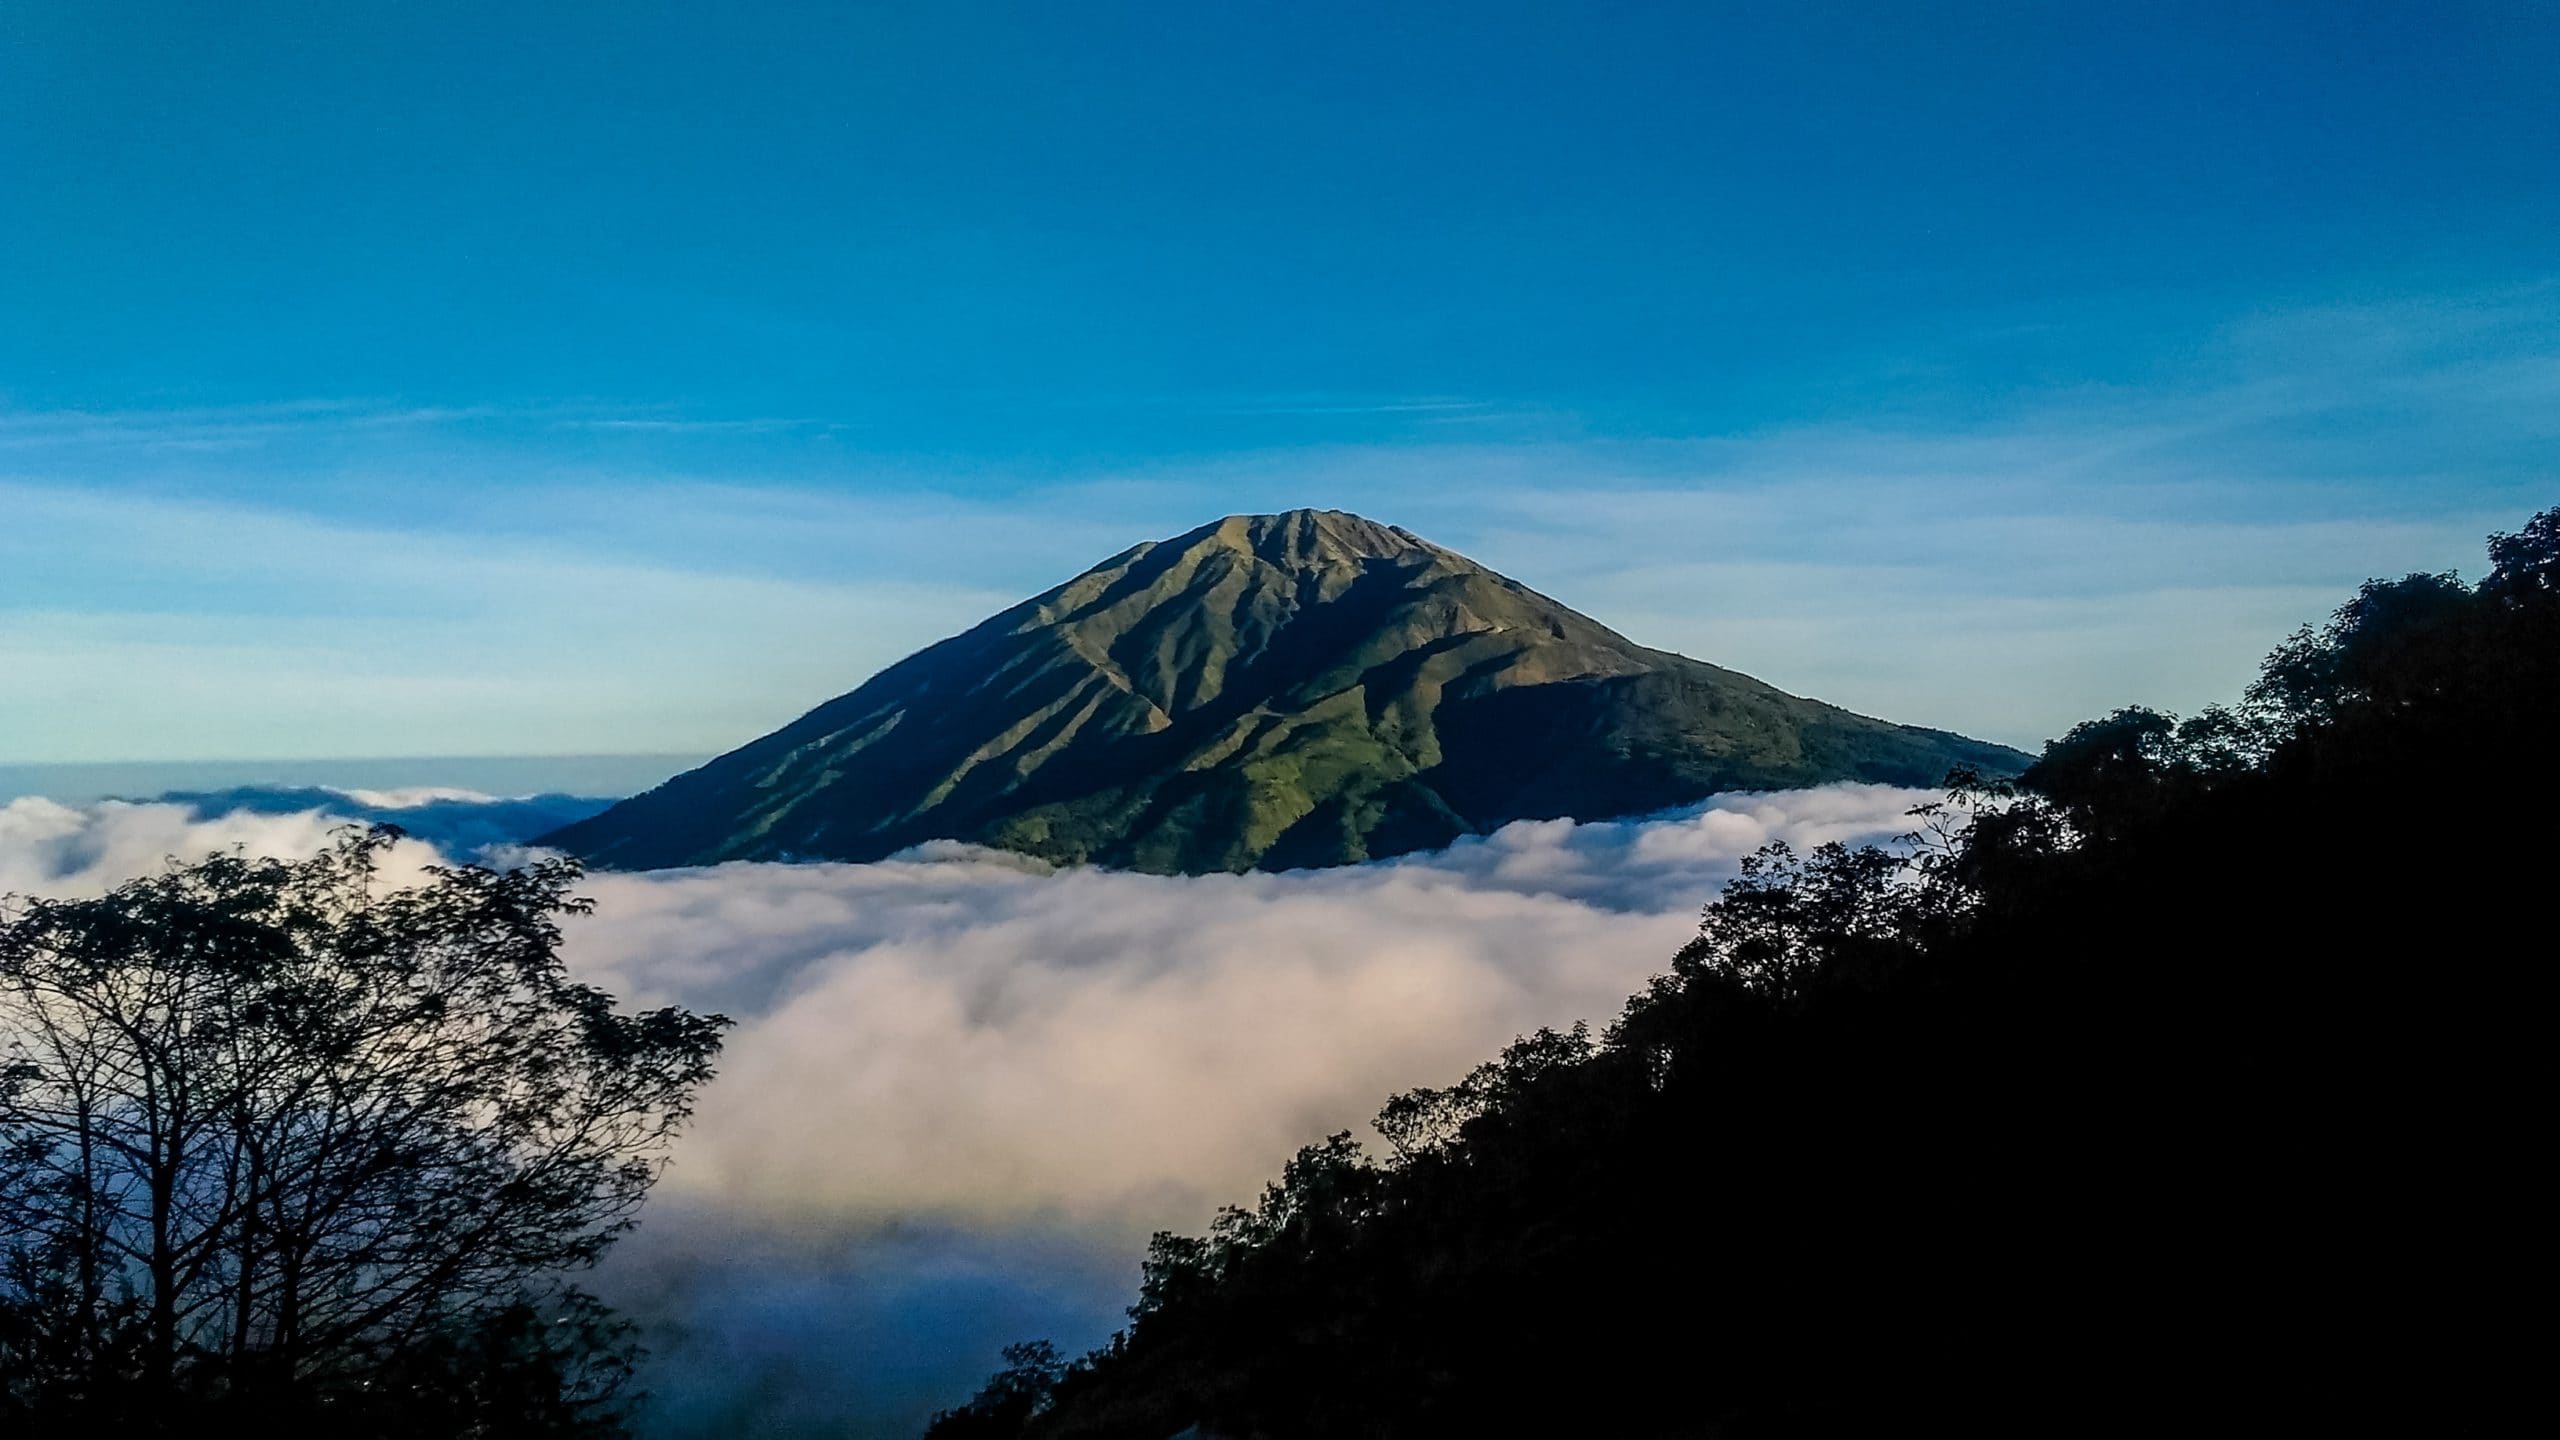 Pesona Alam Indonesia: 10 Gunung Terindah yang Memukau - Featured Image